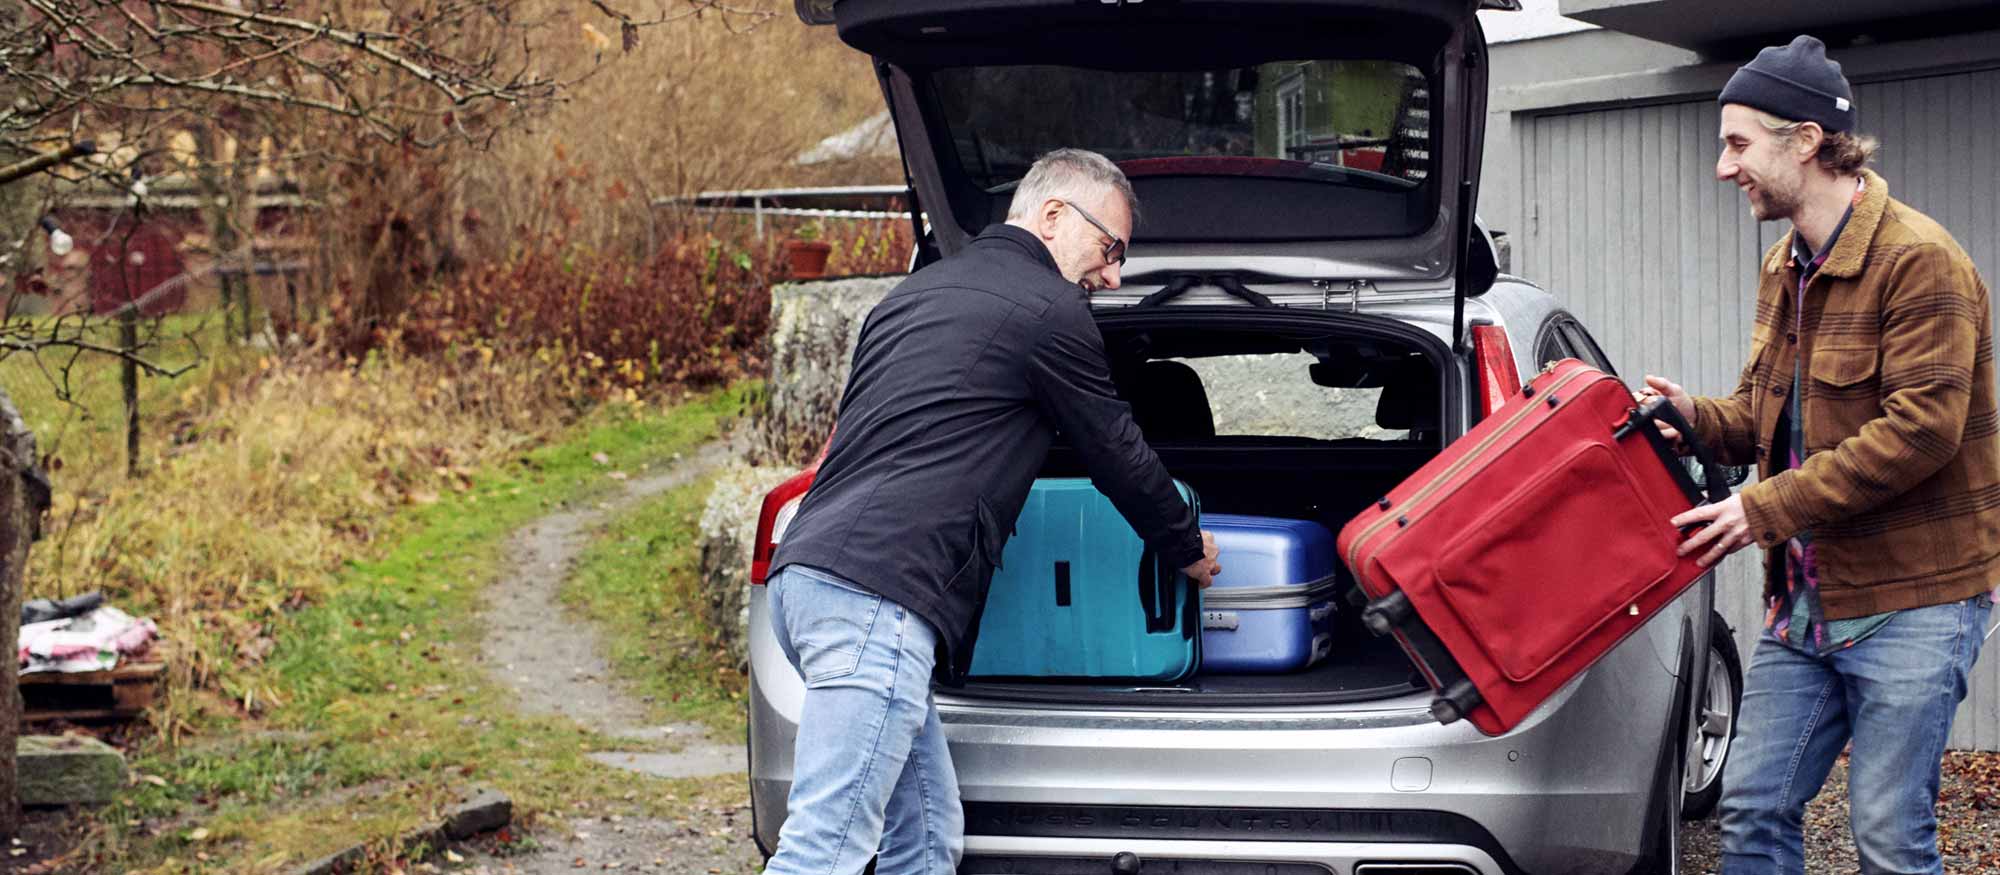 Två män packar in resväskor i bagageluckan på en bil